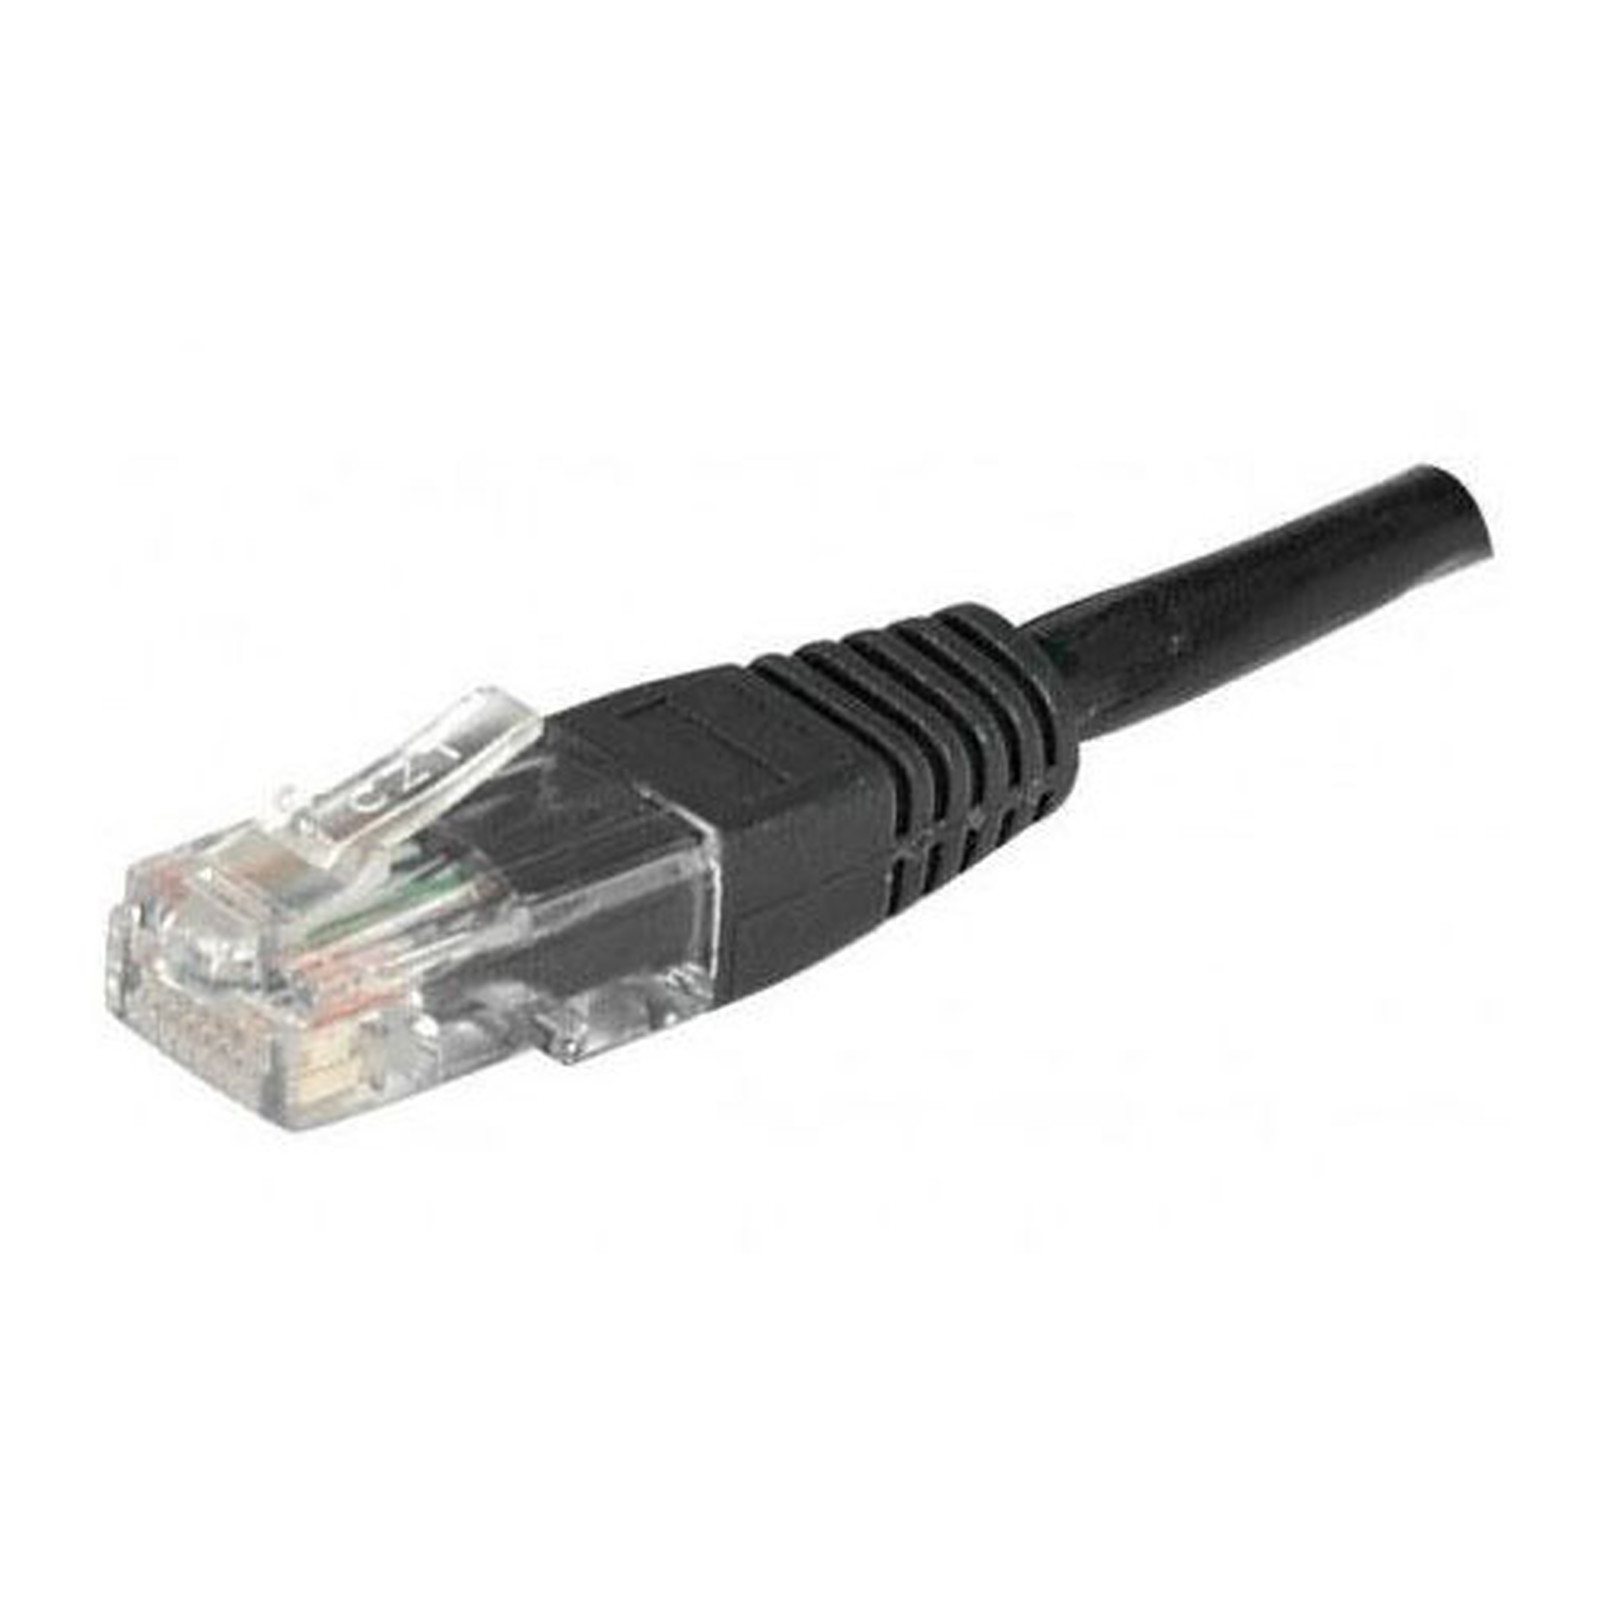 Cable RJ45 categorie 6 S/FTP 1 m (Noir) - Cable RJ45 Generique